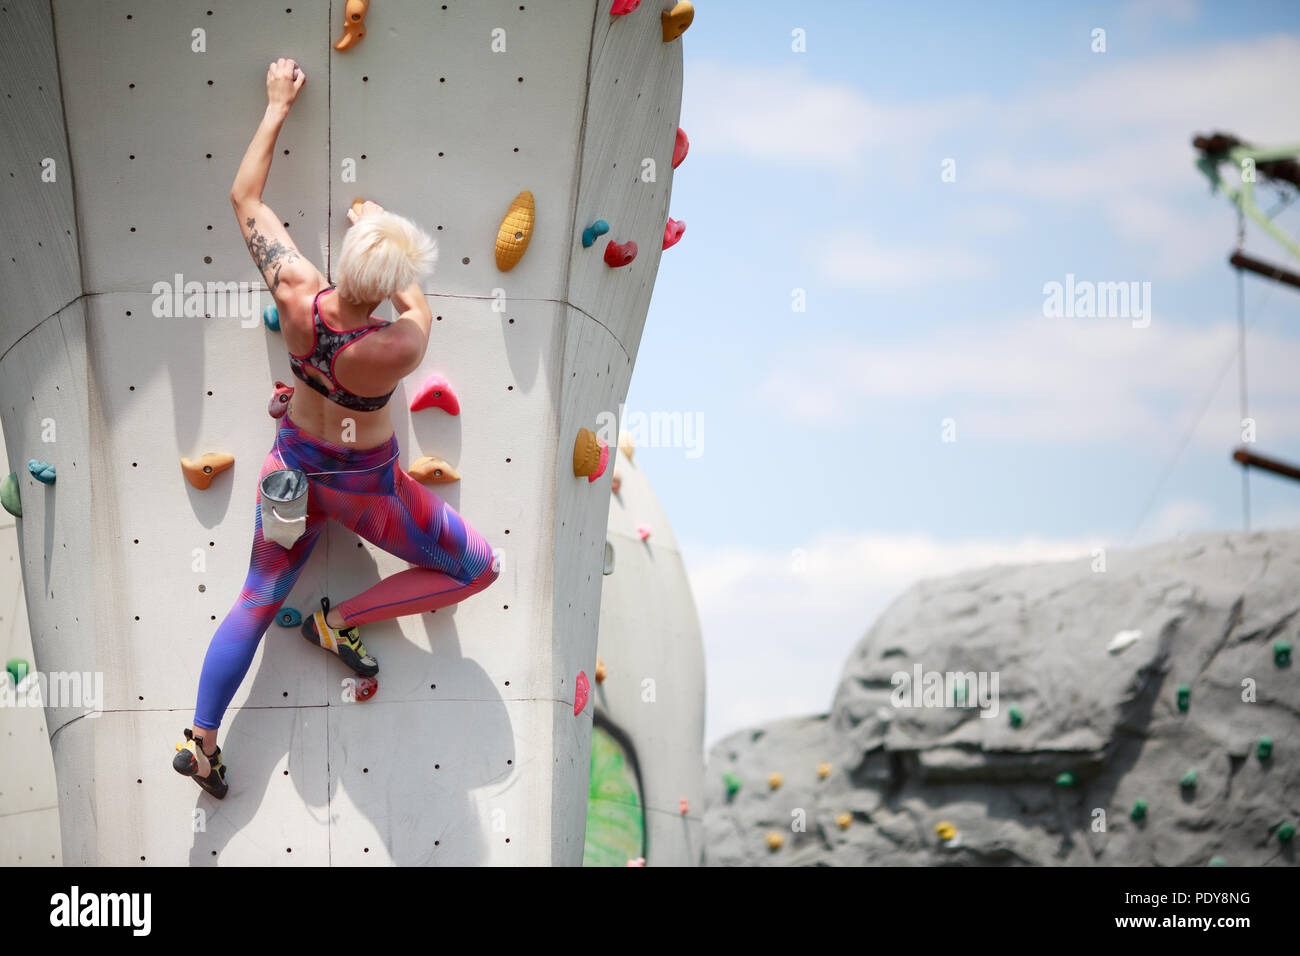 de la de atrás del deporte mujer con pelo corto en ropa deportiva en entrenar en pared para escalar en roca contra el azul con nubes en la tarde